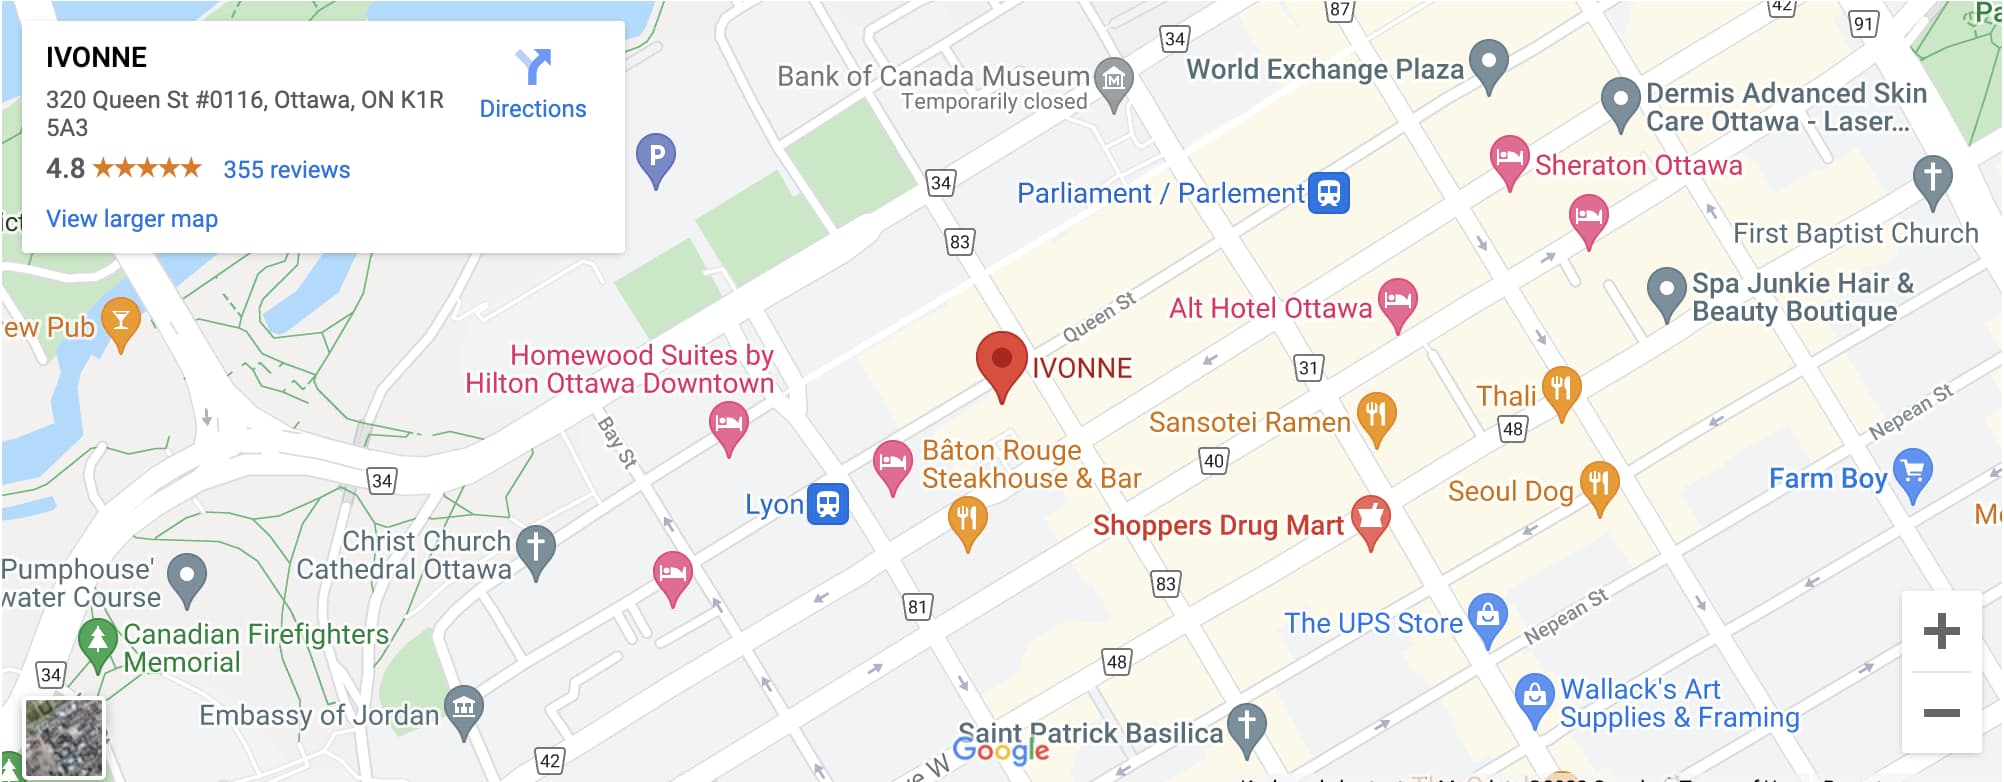 IVONNE Map 0116-320 Queen Street Ottawa K1R 5A3